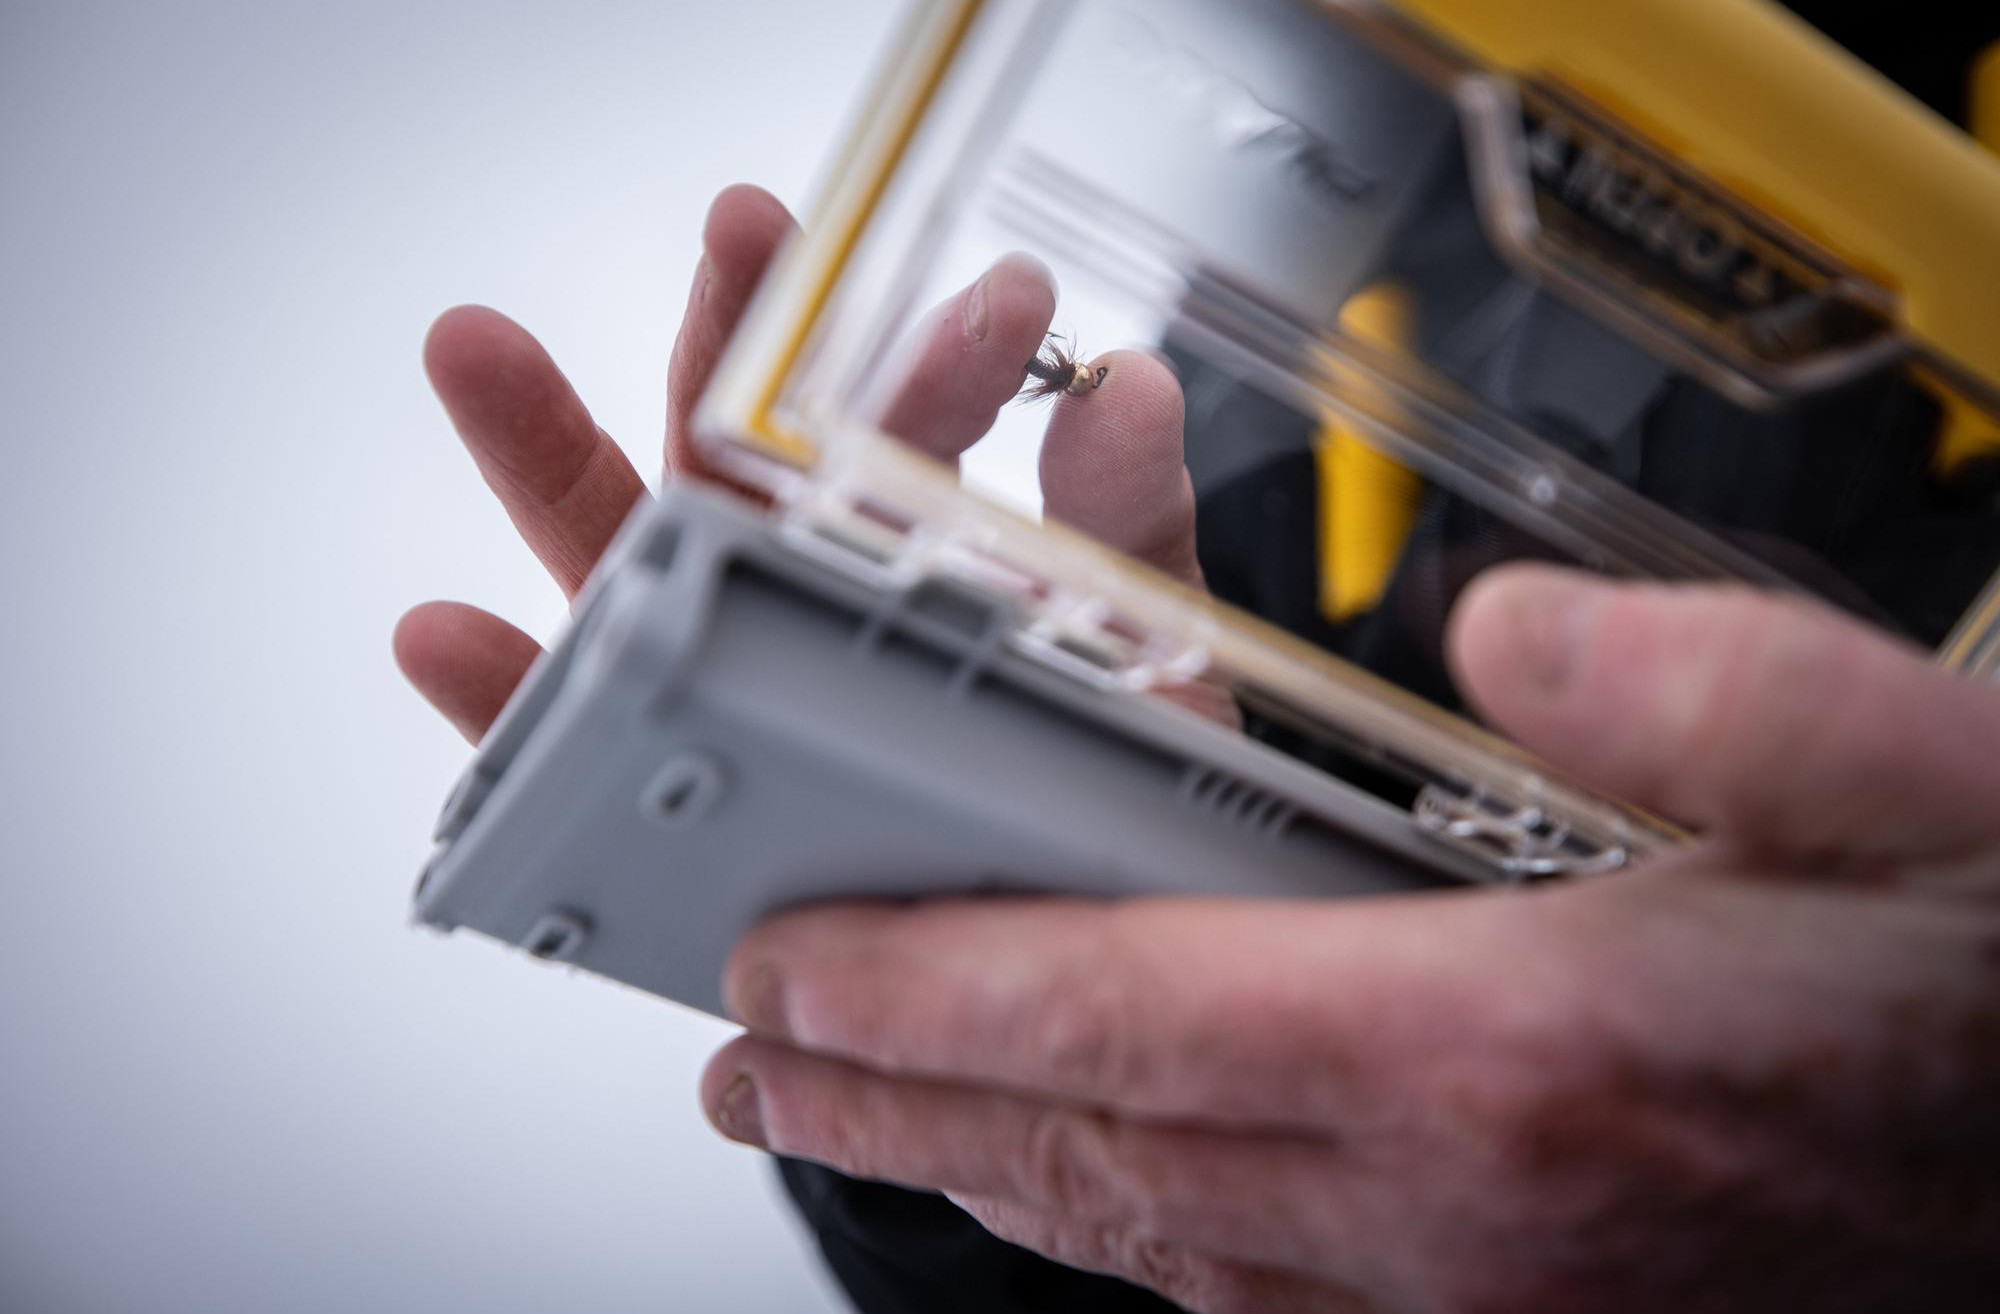 Cassetta per materiali Plano Edge Micro Jig Box